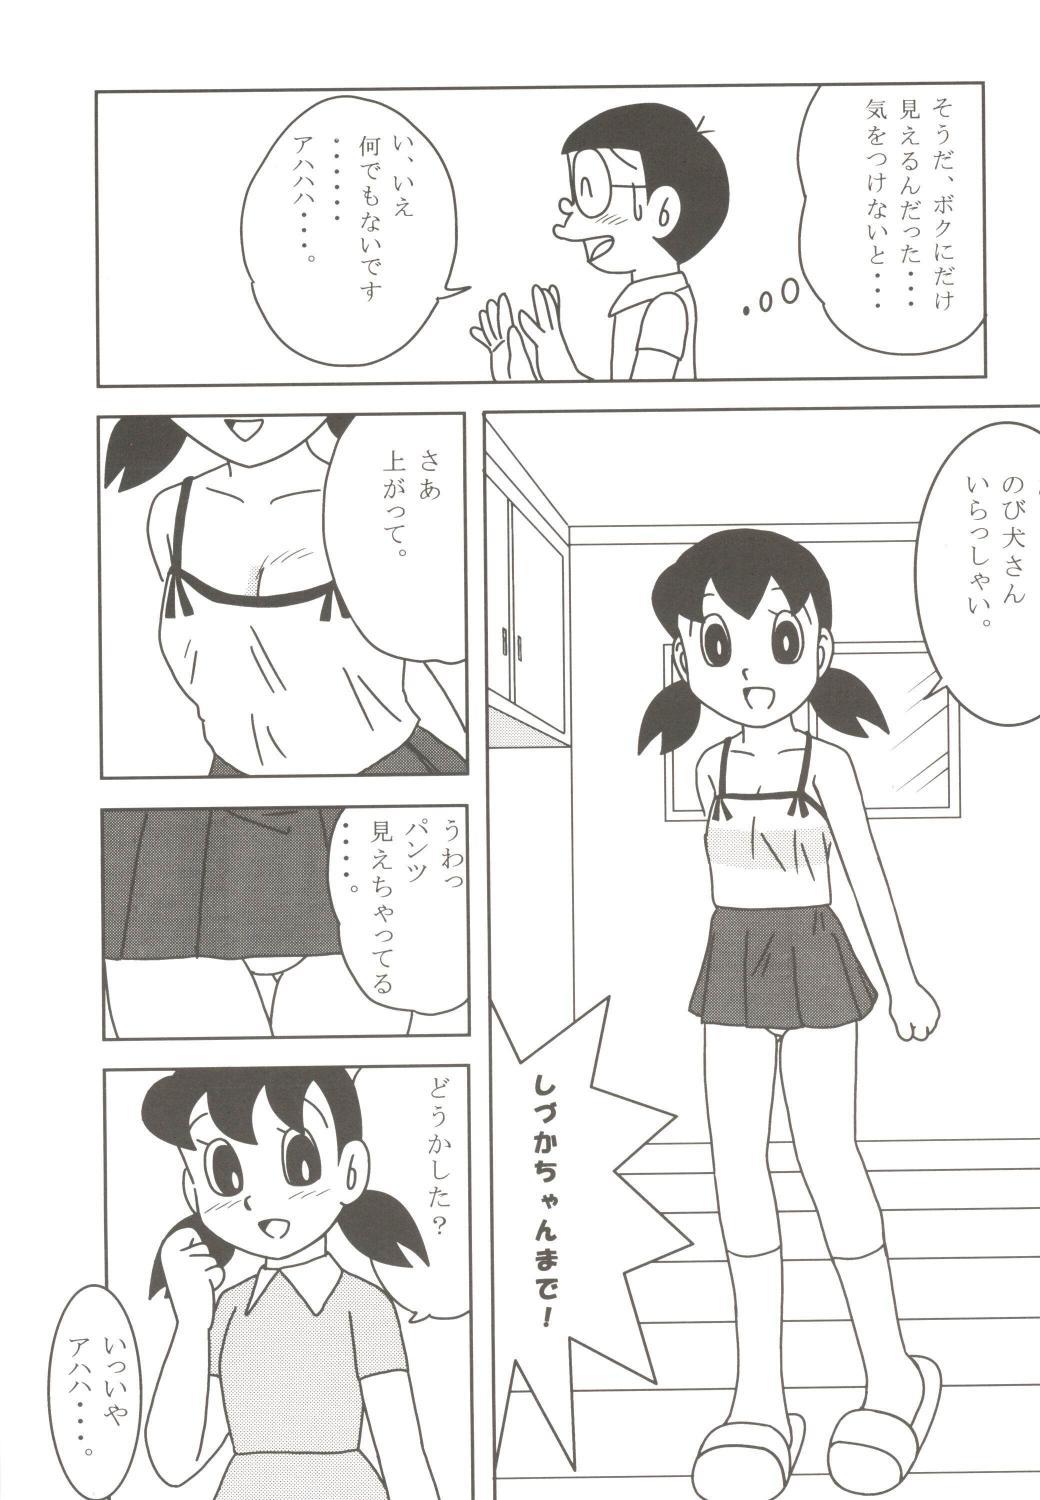 Milfs Anna Ko to Ii na, Yaretara Ii na. - Detective conan Doraemon Passionate - Page 9